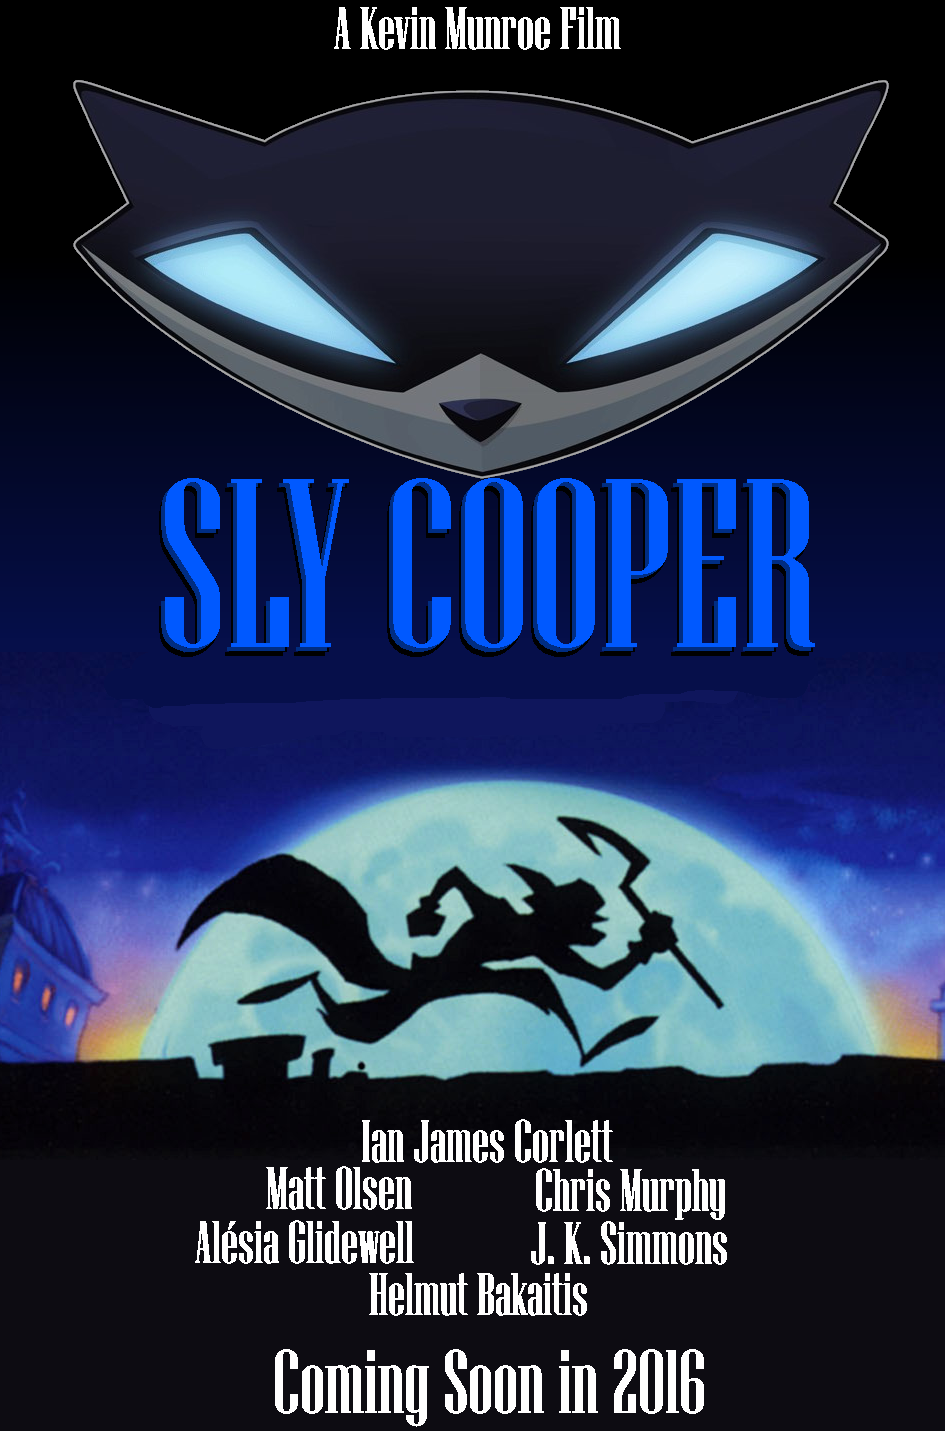 Filme de Sly Cooper estreia em 2016